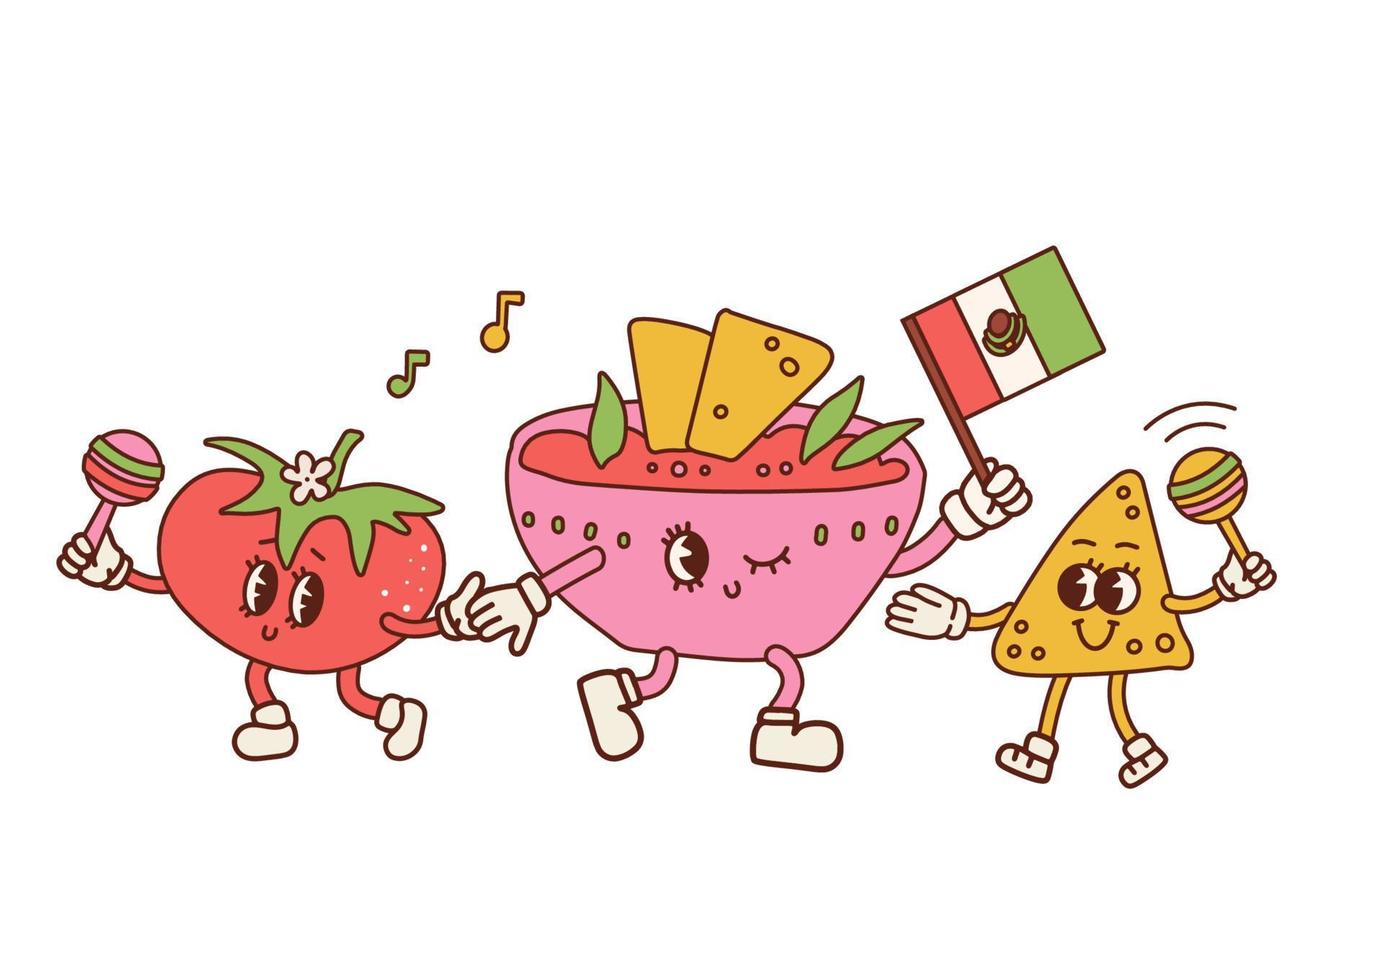 lustige nachos mit tomaten- und salsasaucencharakteren. mexikanische lebensmittelparty der retro-karikatur. nacho-chips mit maracas in den händen, soßenschüssel mit mexikanischer flagge. vektorkontur handgezeichnete illustration. vektor